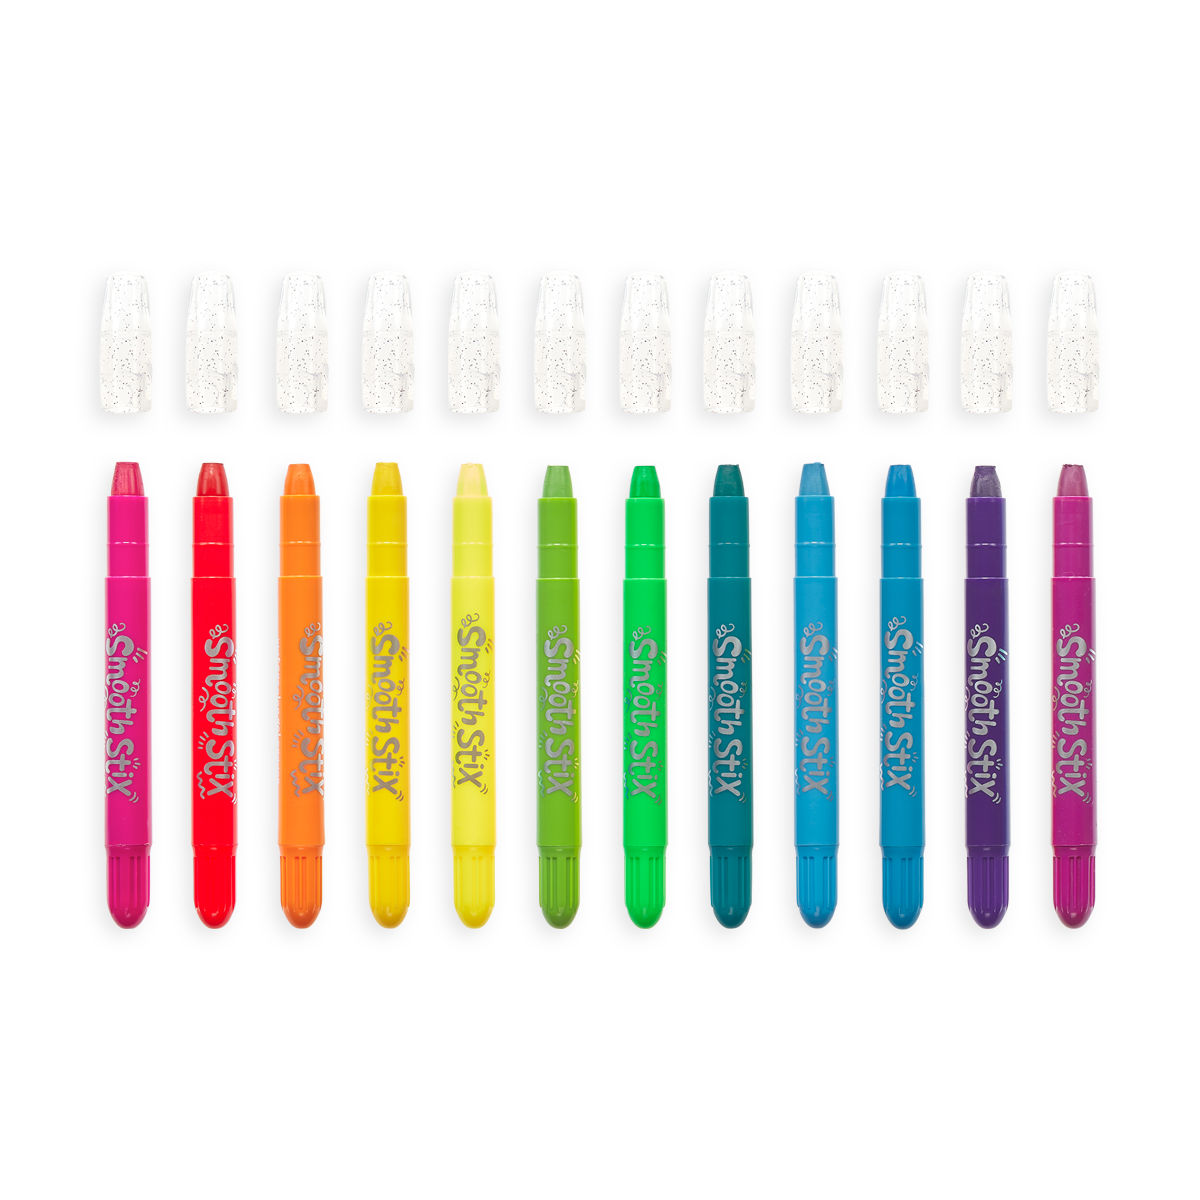 Gel Crayons - Set of 24 — Shuttle Art